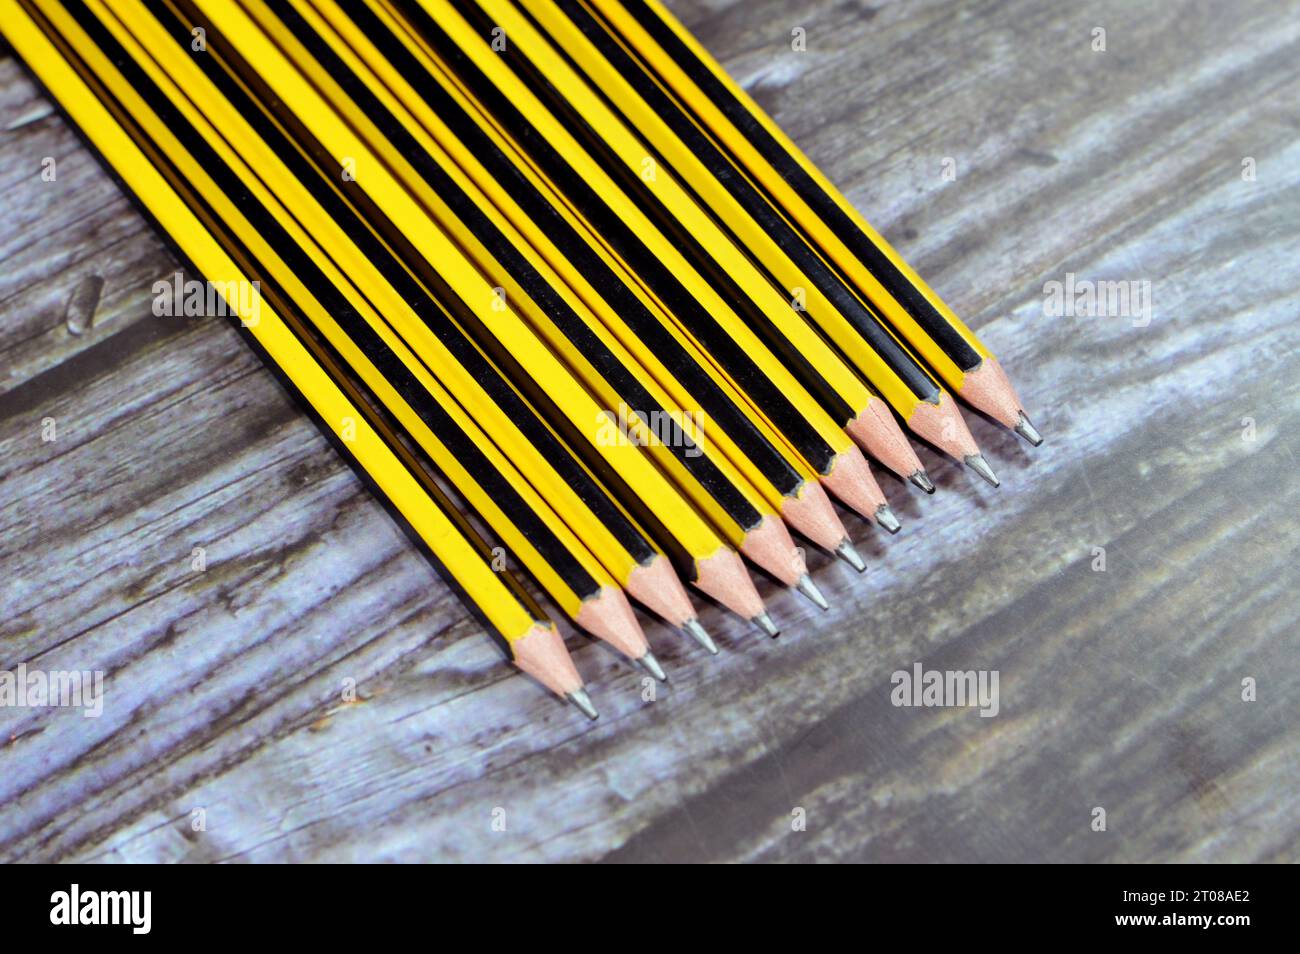 Bleistiftreihe, ein Bleistift ist ein Schreib- oder Zeichengerät mit einem festen Pigmentkern in einer Schutzhülle, die das Risiko eines Kernbruchs reduziert, an Stockfoto